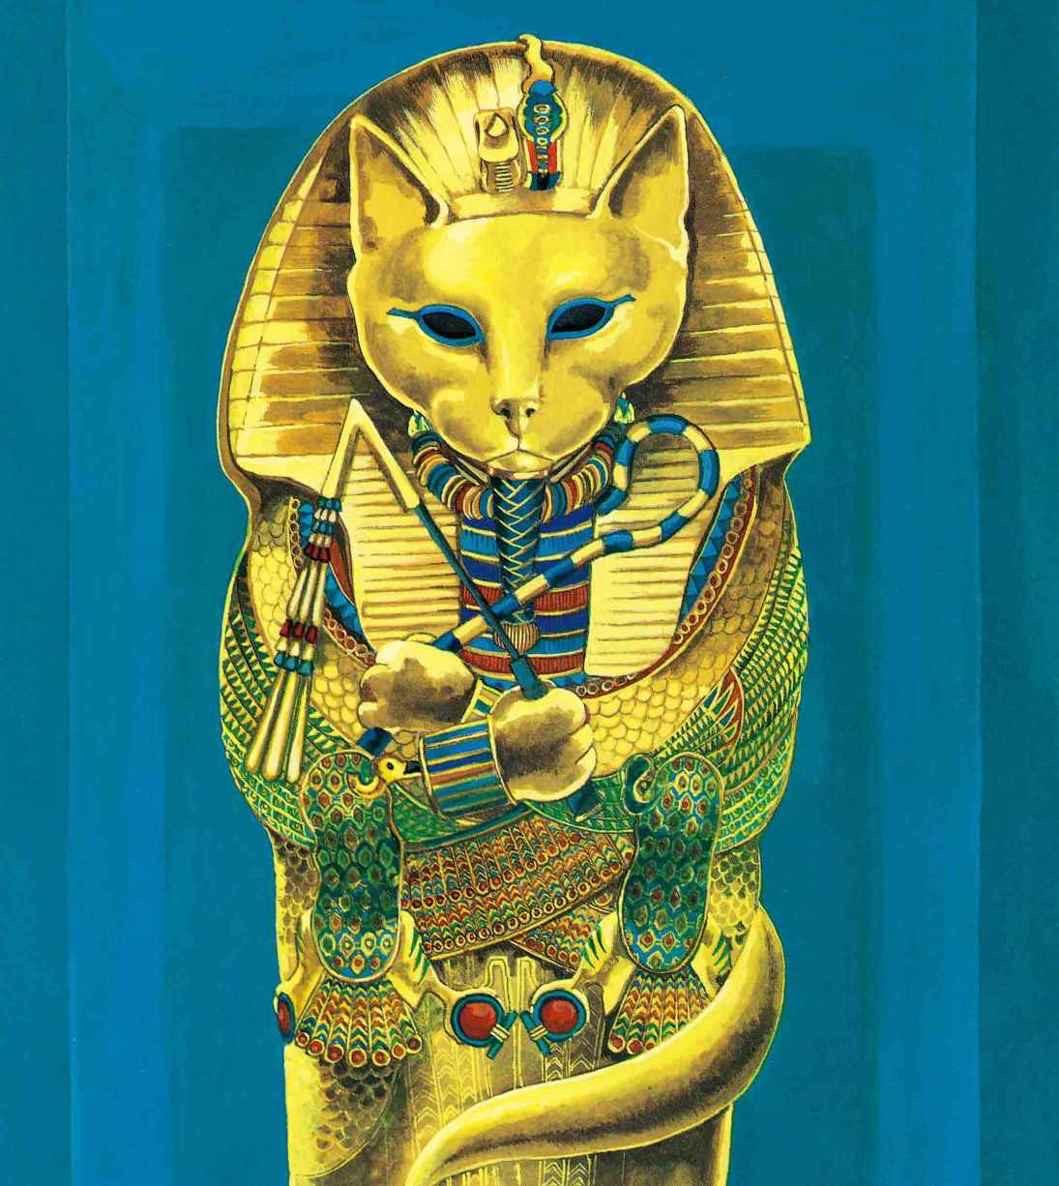 图坦卡蒙的棺具。<br/>《如果名画都是猫》苏珊·赫伯特。